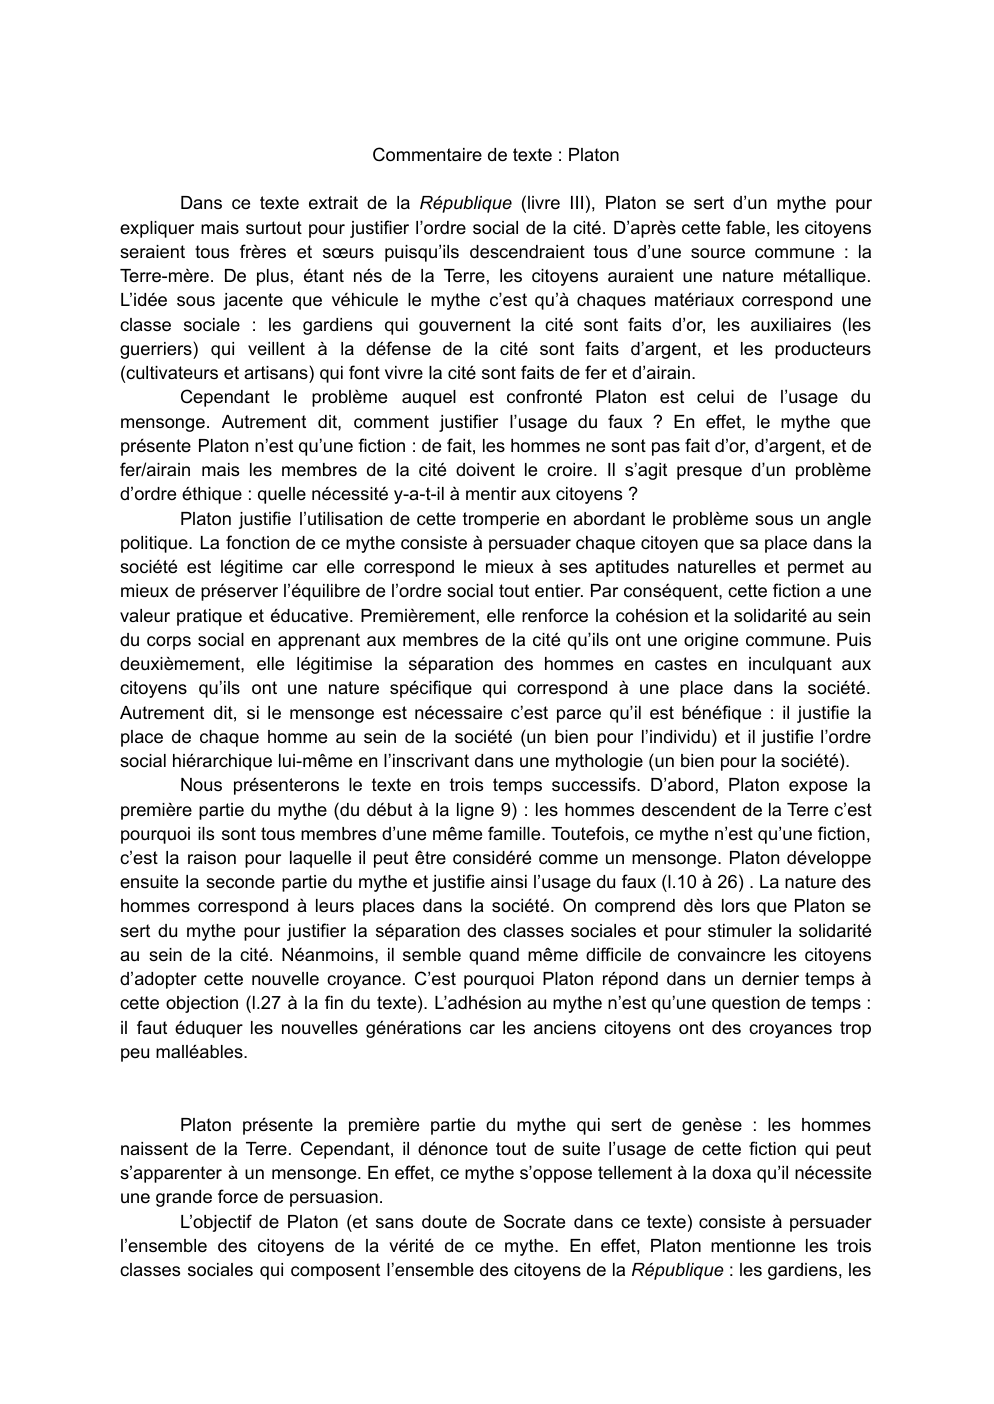 Prévisualisation du document Commentaire de texte Platon de la République (livre III)